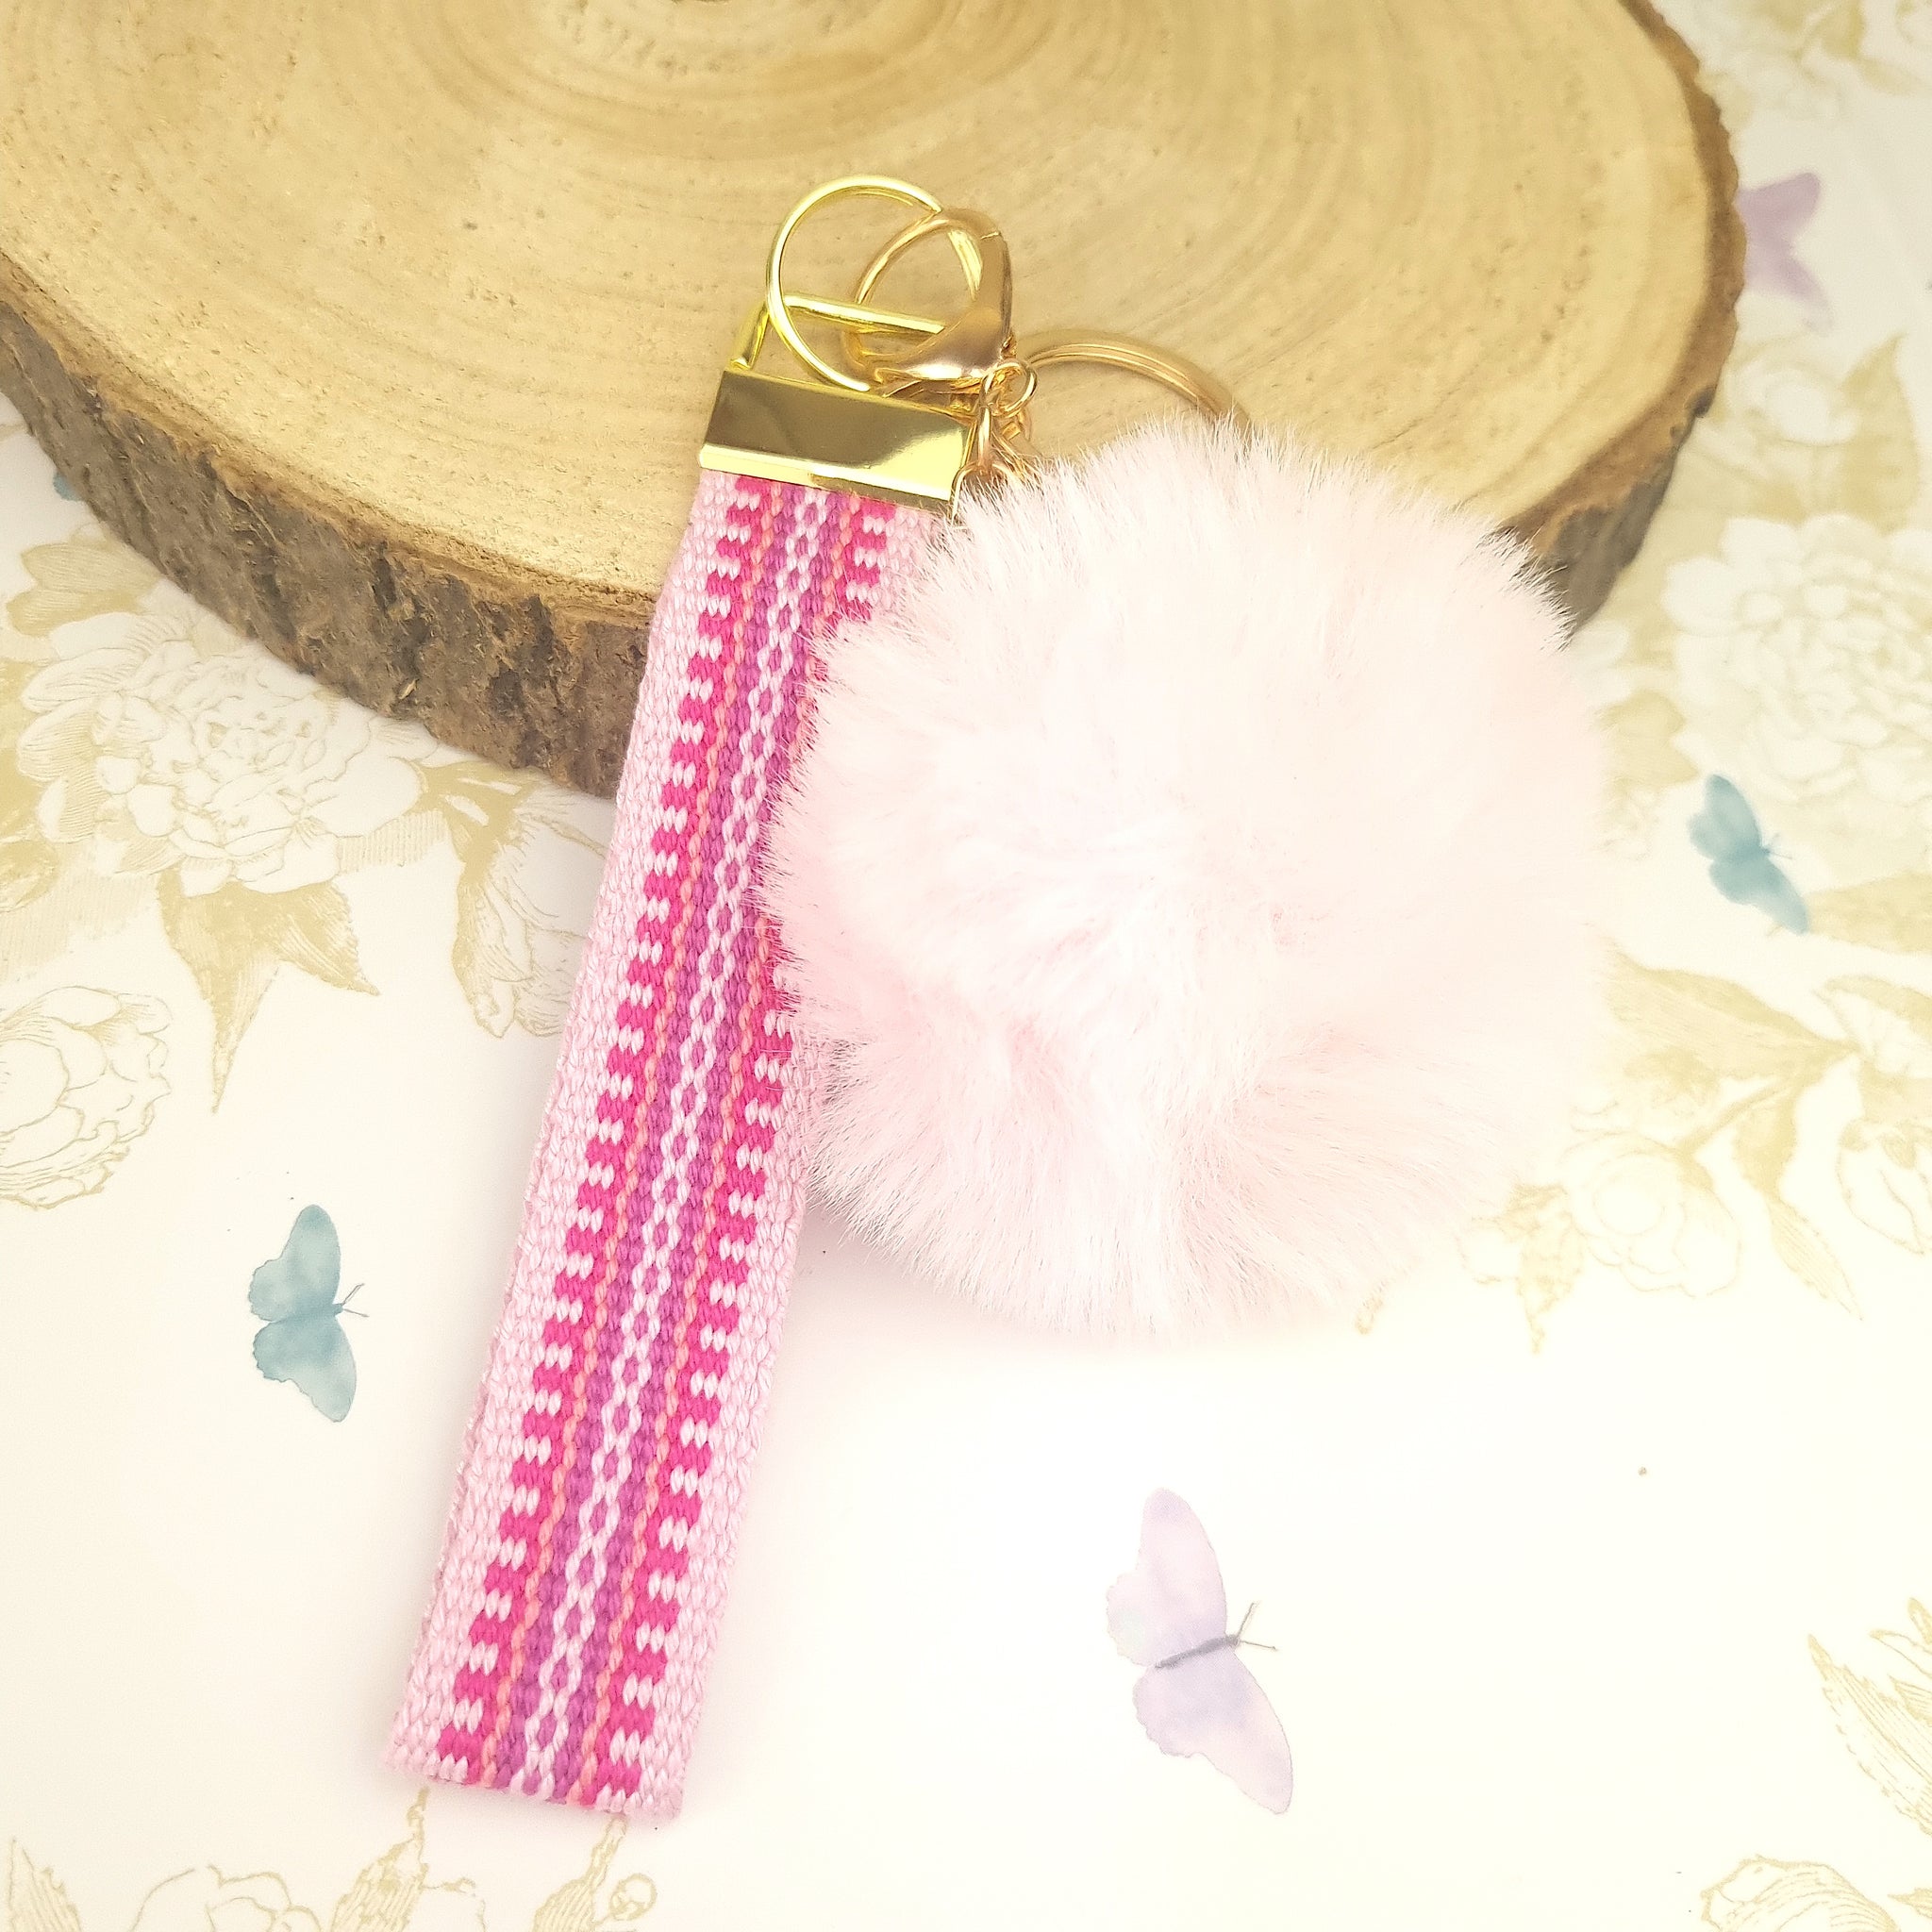 wristlet strap keychain in pink with pom pom